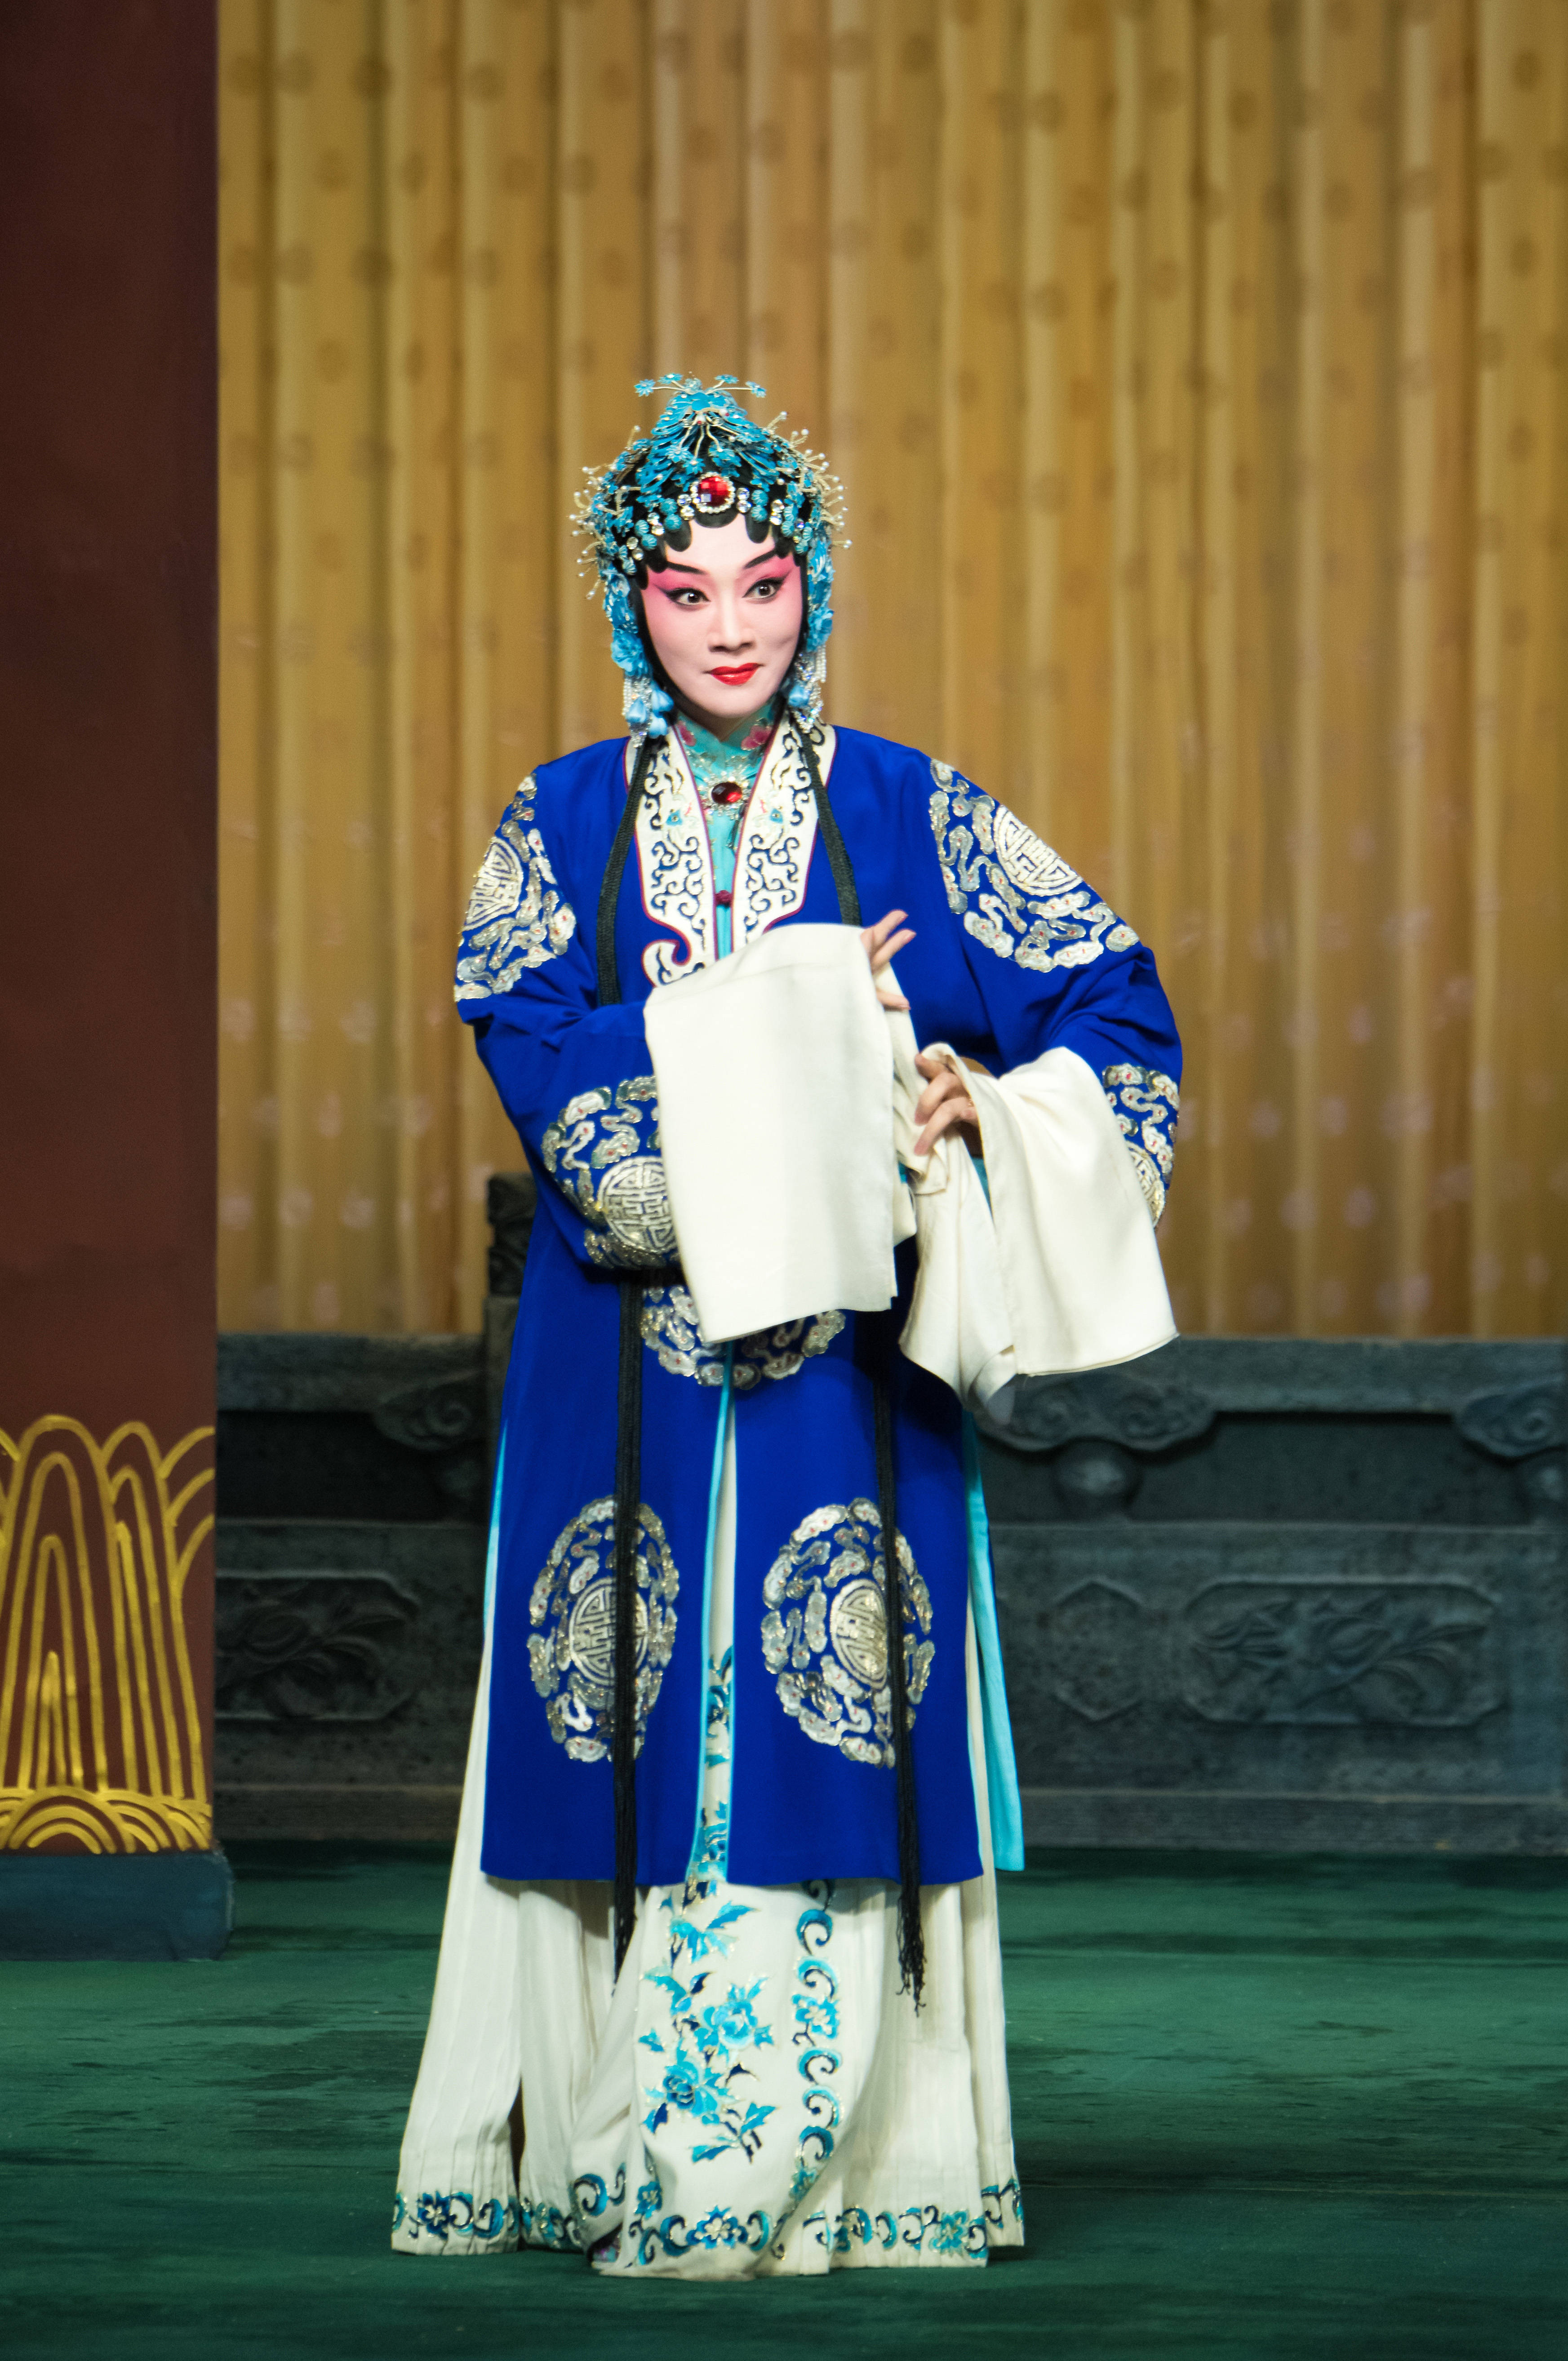 剧照欣赏:邮册设计稿欣赏:路洁,北京京剧院一团青衣演员